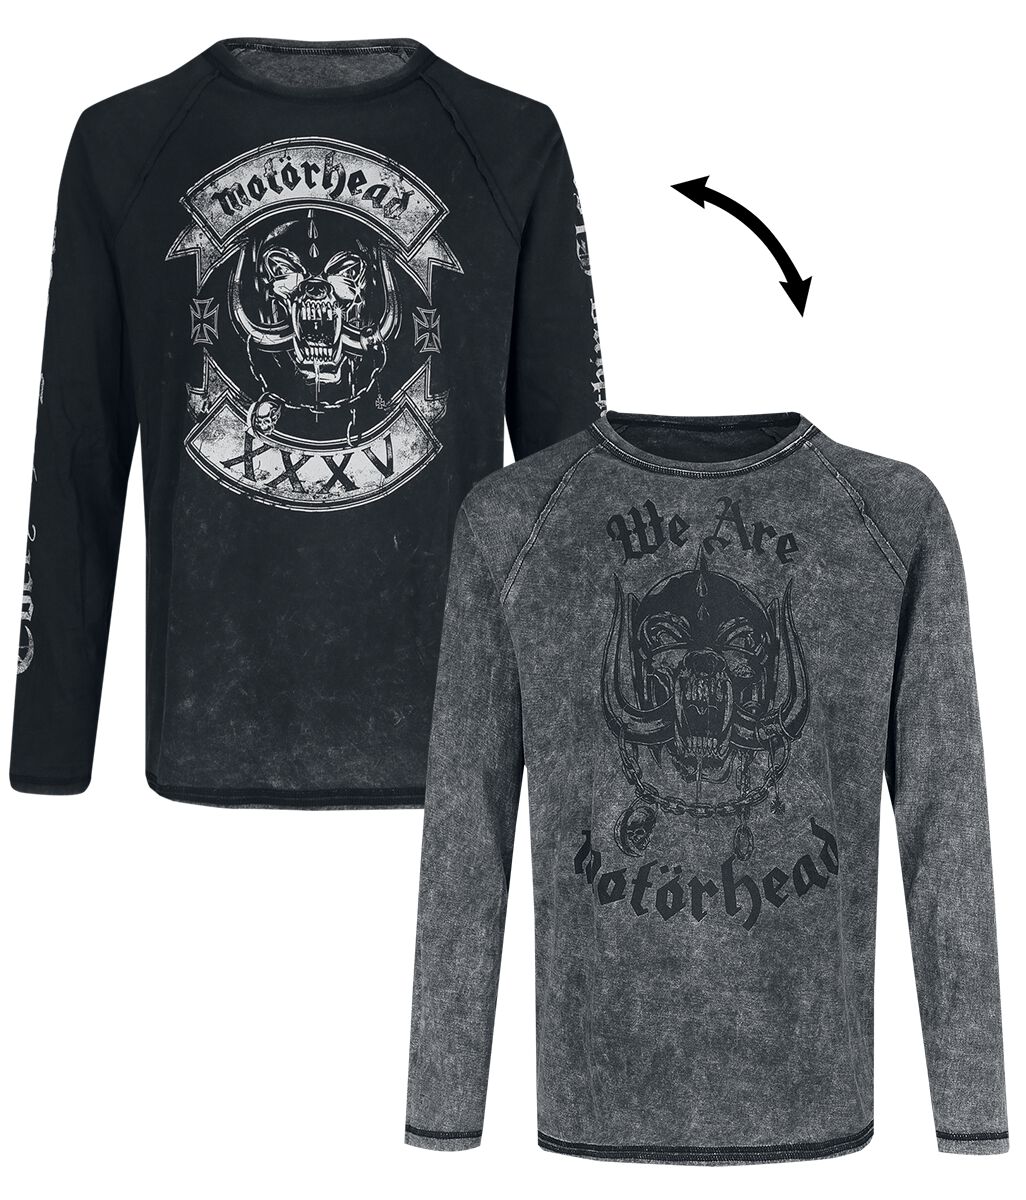 Motörhead Langarmshirt - EMP Signature Collection - S bis 3XL - für Männer - Größe L - dunkelgrau  - EMP exklusives Merchandise!